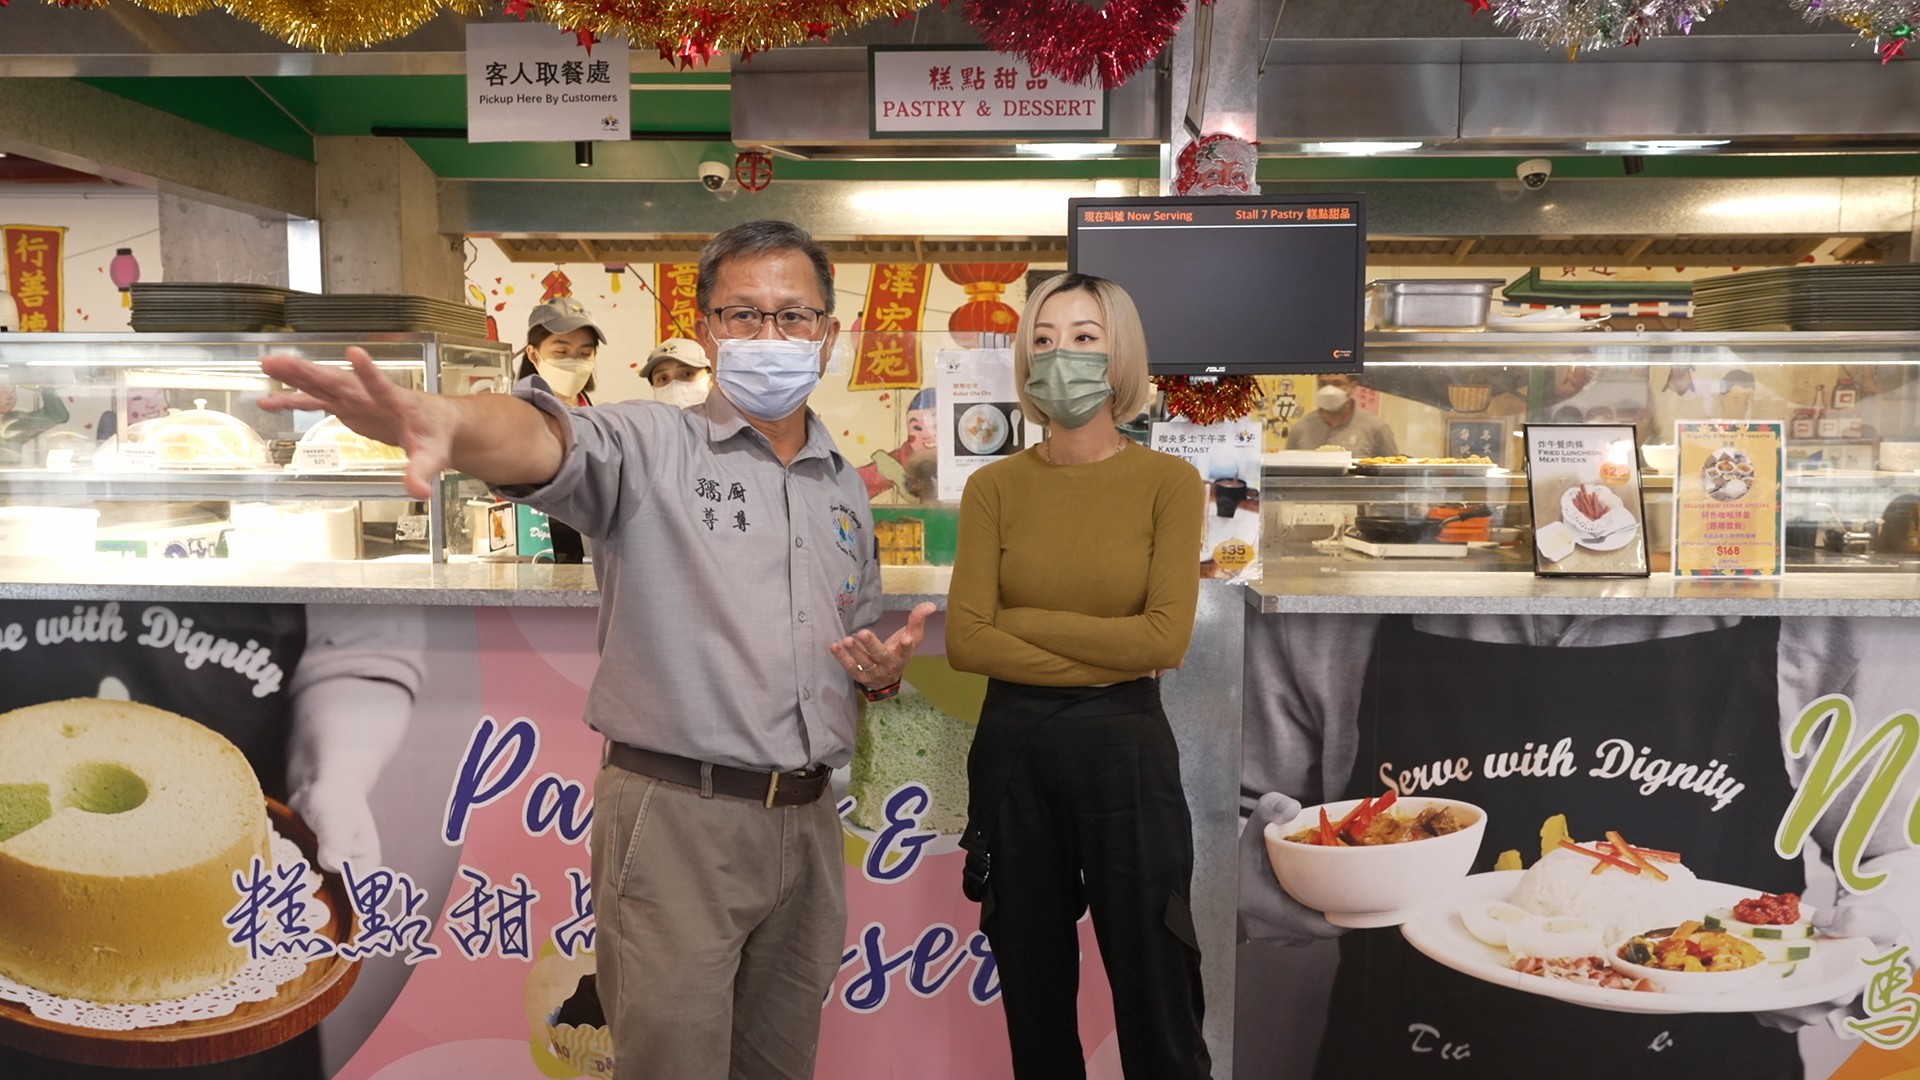 来自新加坡的社企创办人Mr. Koh(图左)向泳儿(图右)介绍社企餐厅「厨尊」的创办理念与营运模式。